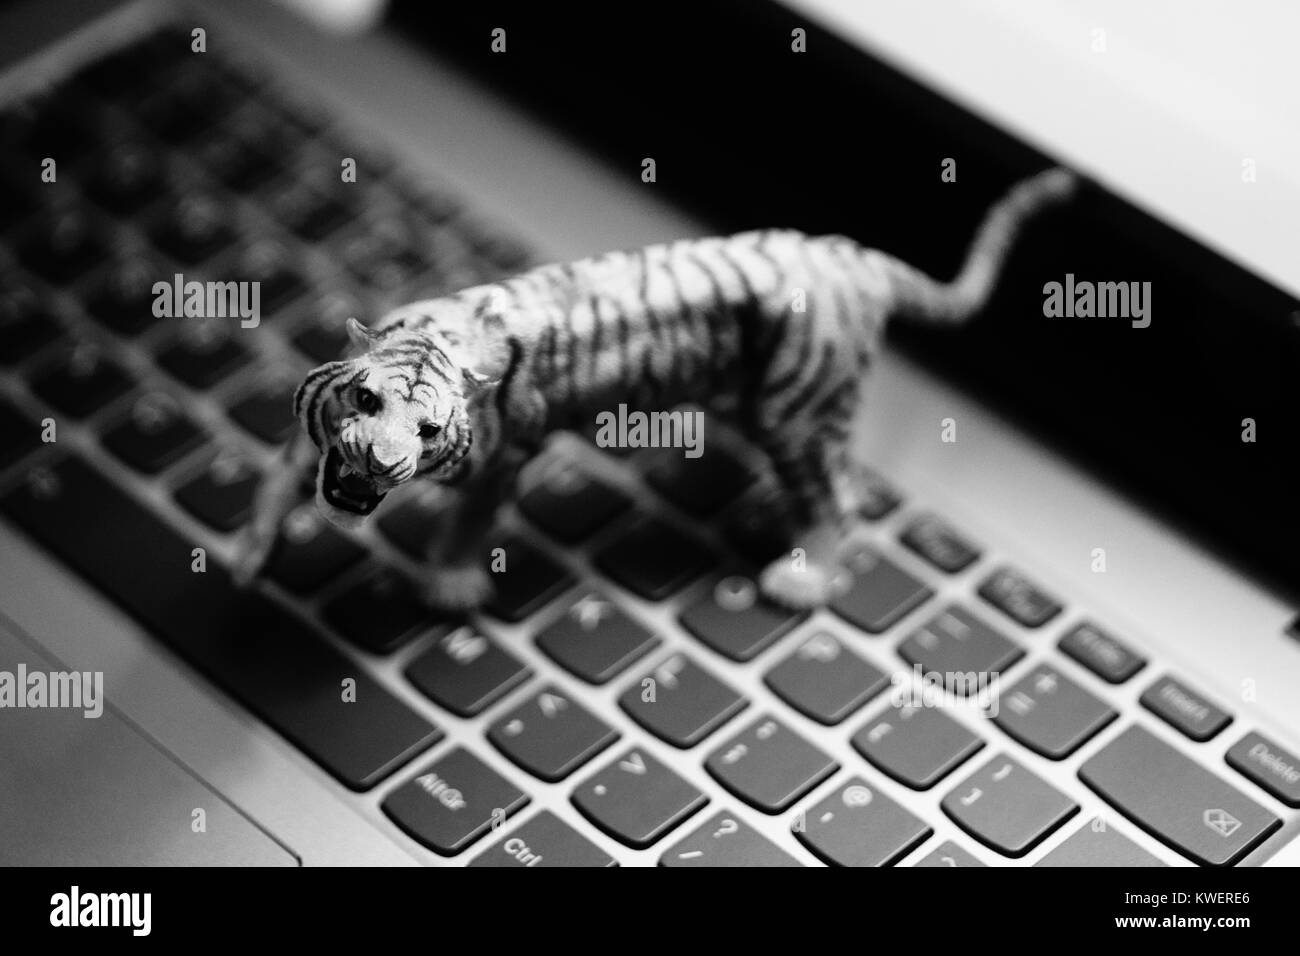 Toy tiger sur ordinateur portable Clavier - les animaux sauvages et l'agriculture à l'ère numérique Banque D'Images